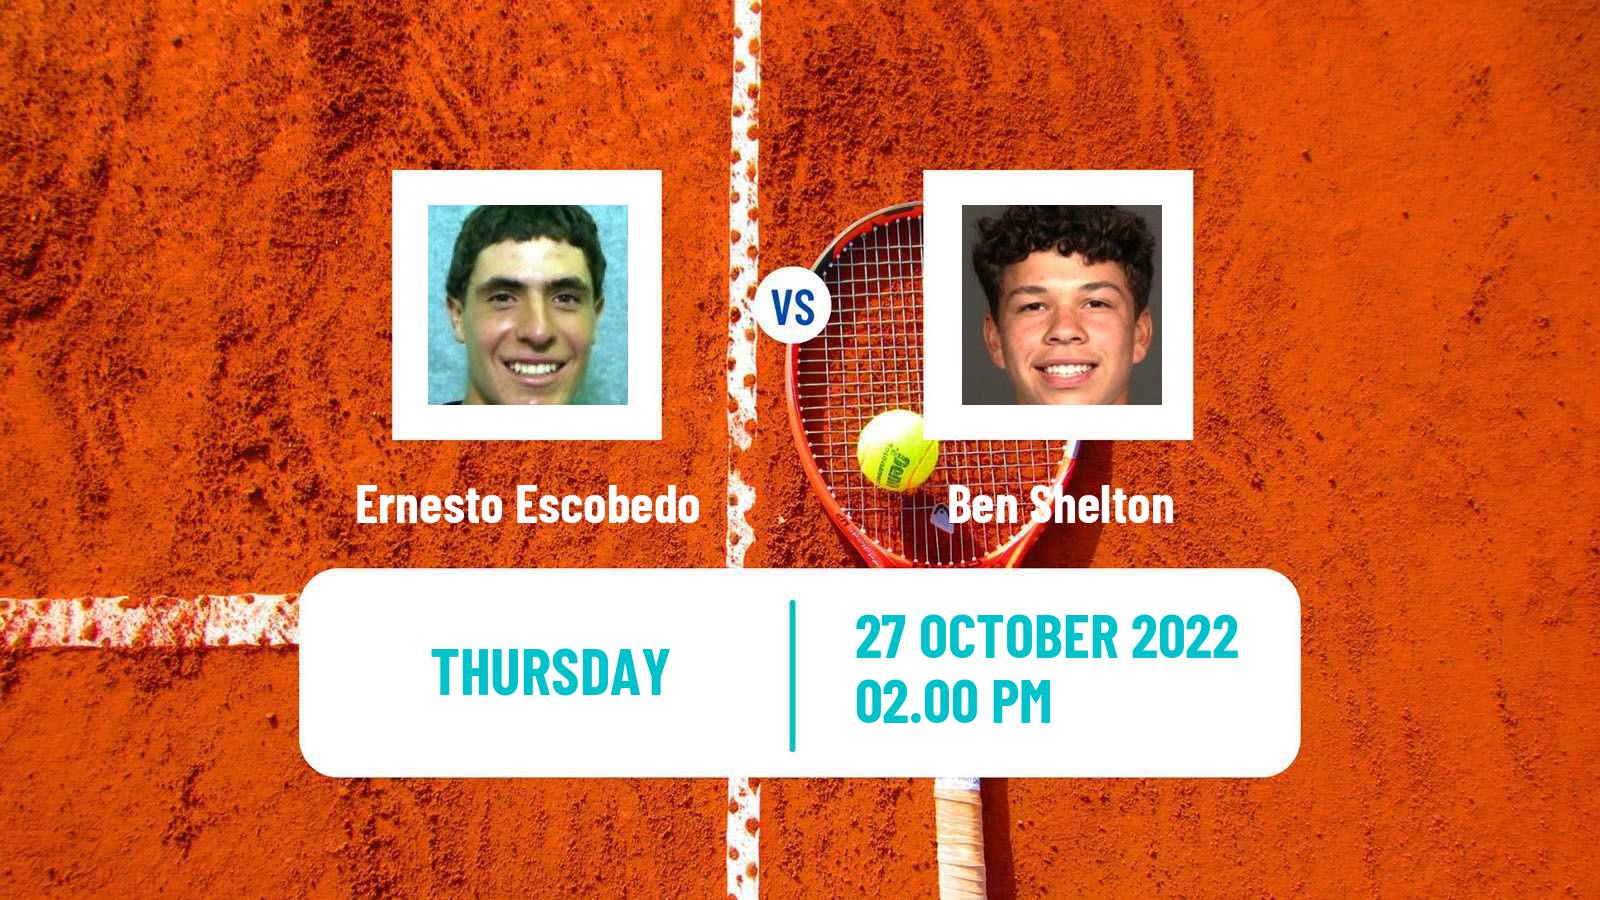 Tennis ATP Challenger Ernesto Escobedo - Ben Shelton